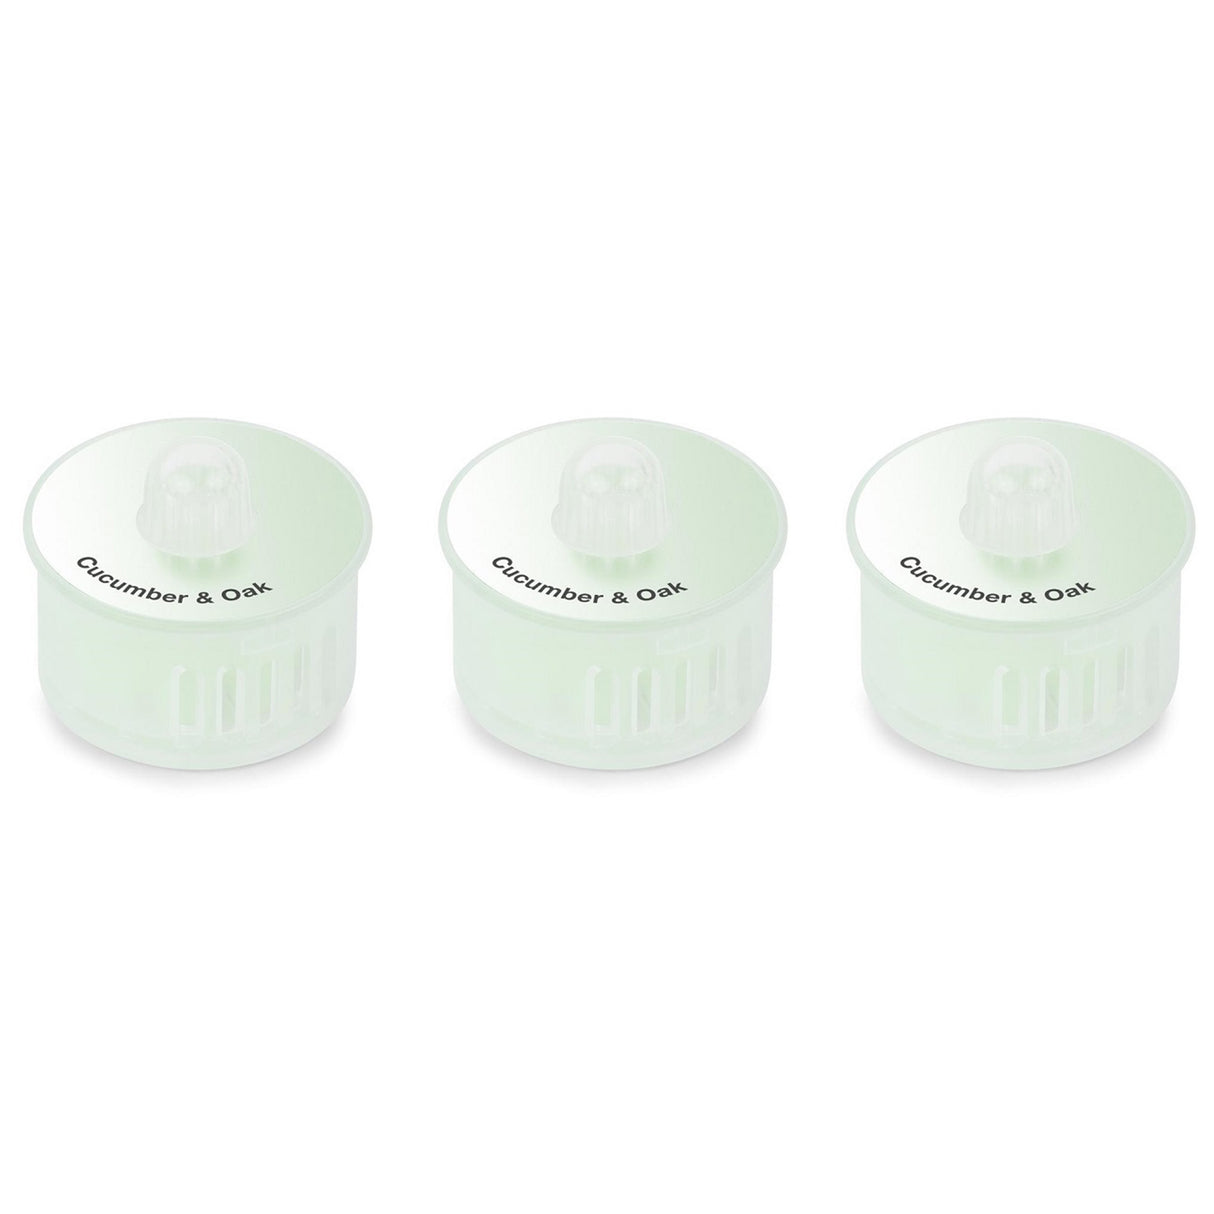 DEEBOT T10 Air Freshener Capsule – Cucumber & Oak (3 Capsules)